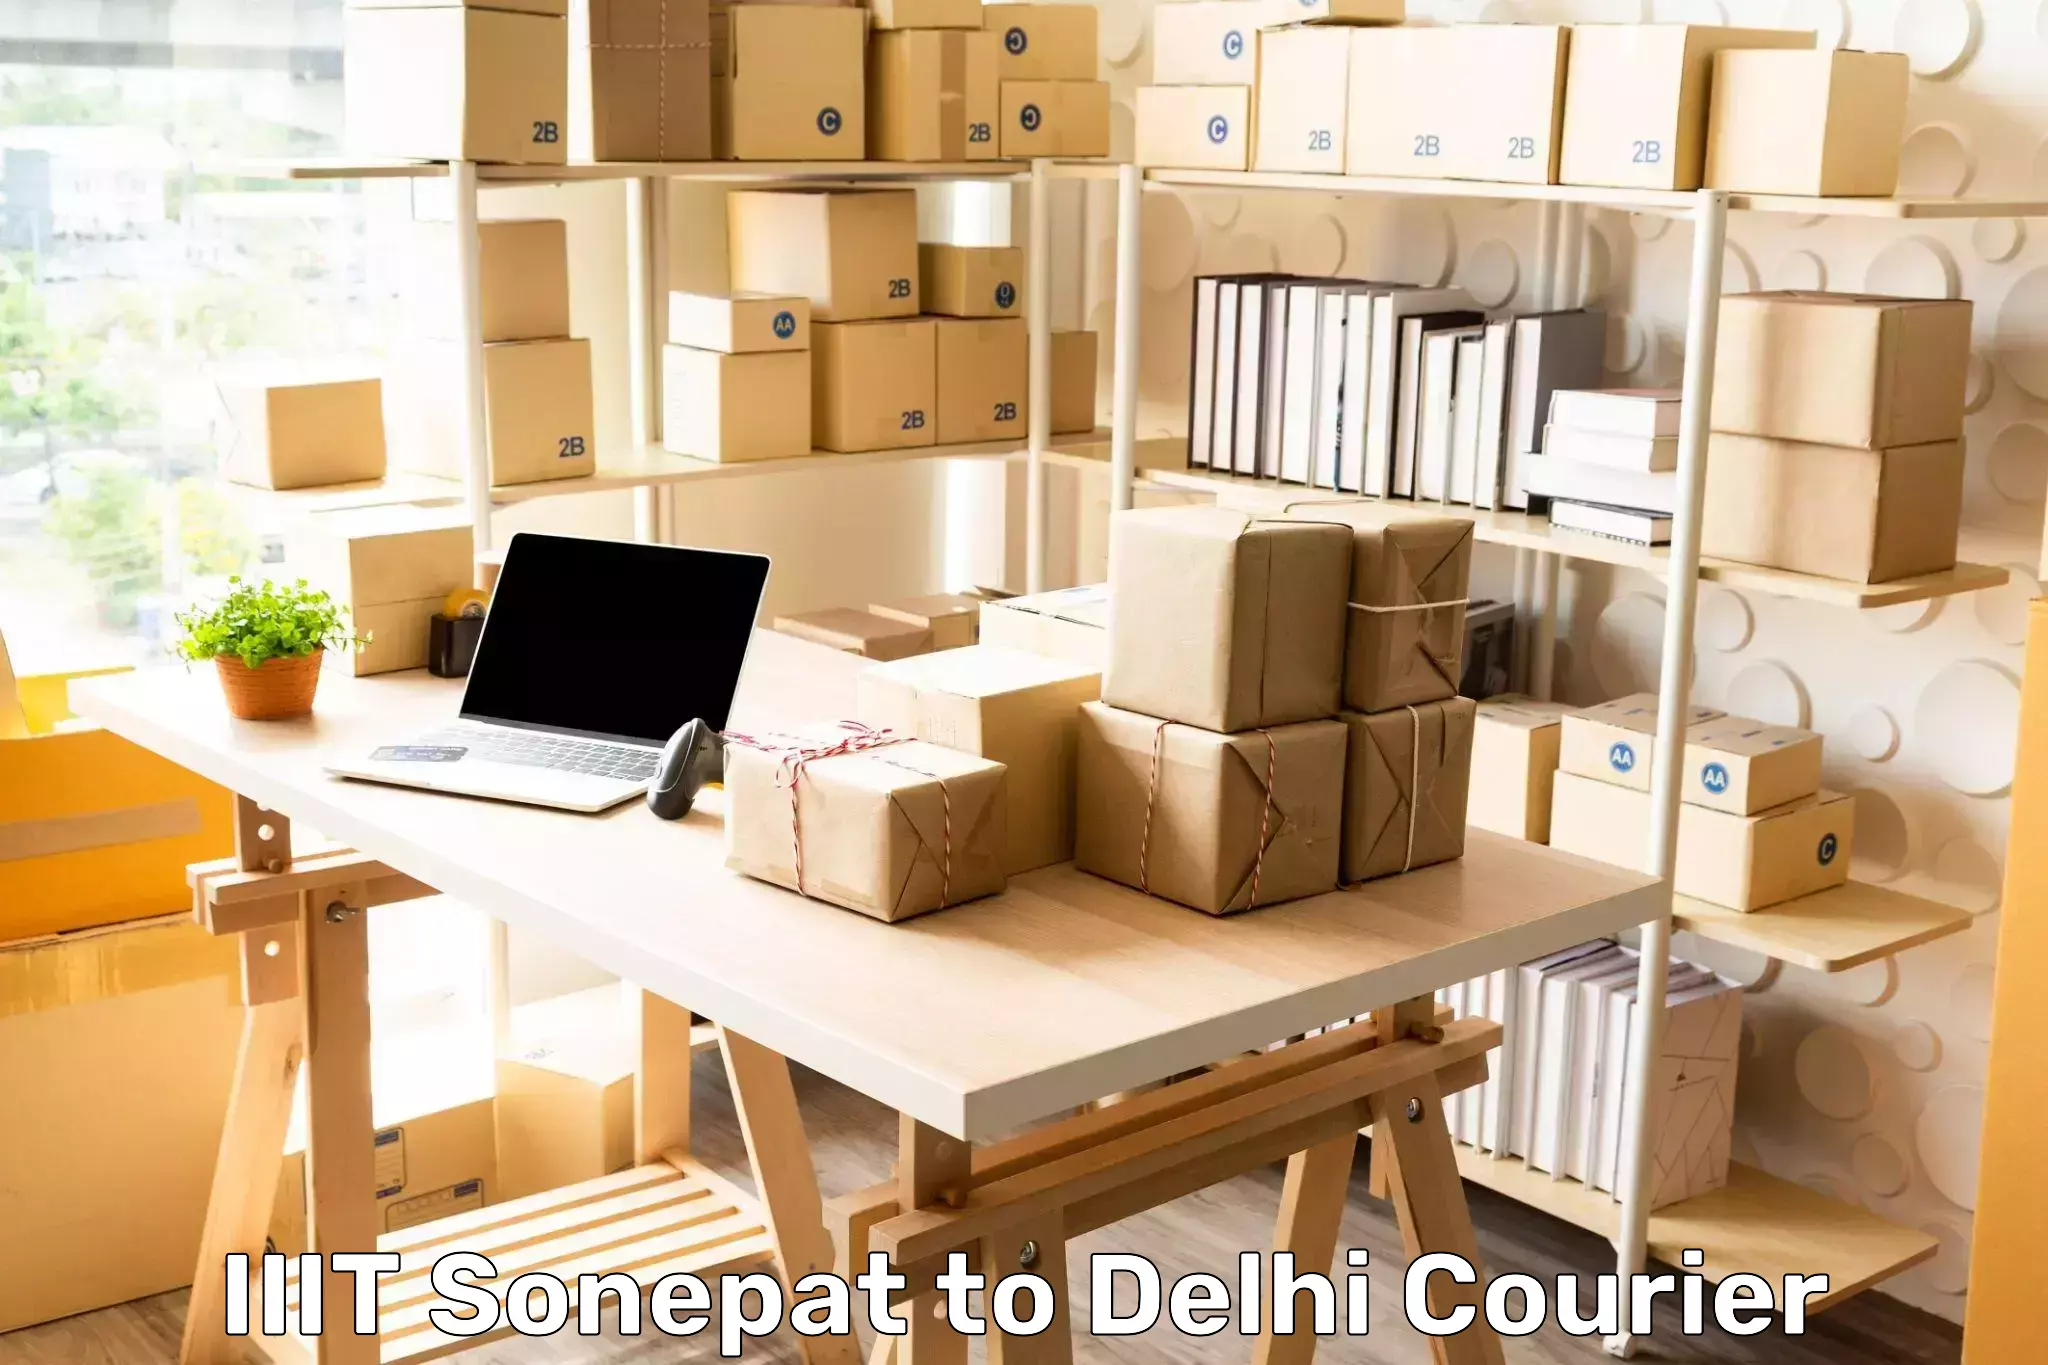 Door-to-door freight service IIIT Sonepat to East Delhi